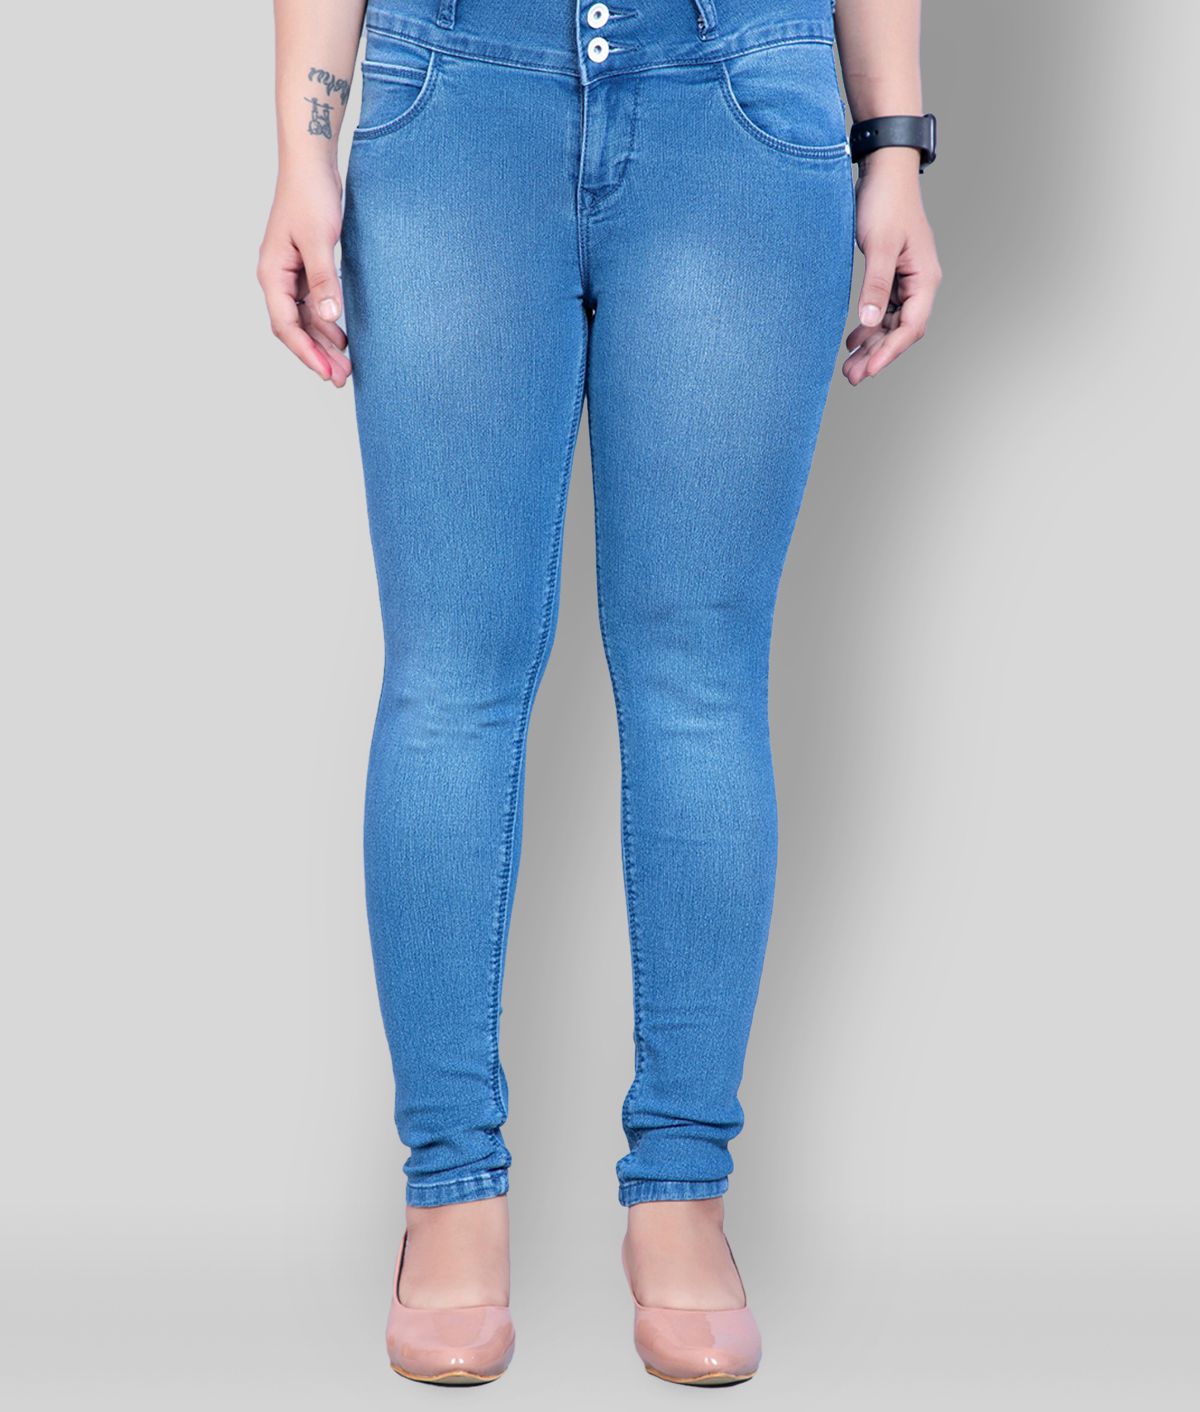 Rea-lize - Light Blue Cotton Women's Jeans ( Pack of 1 )